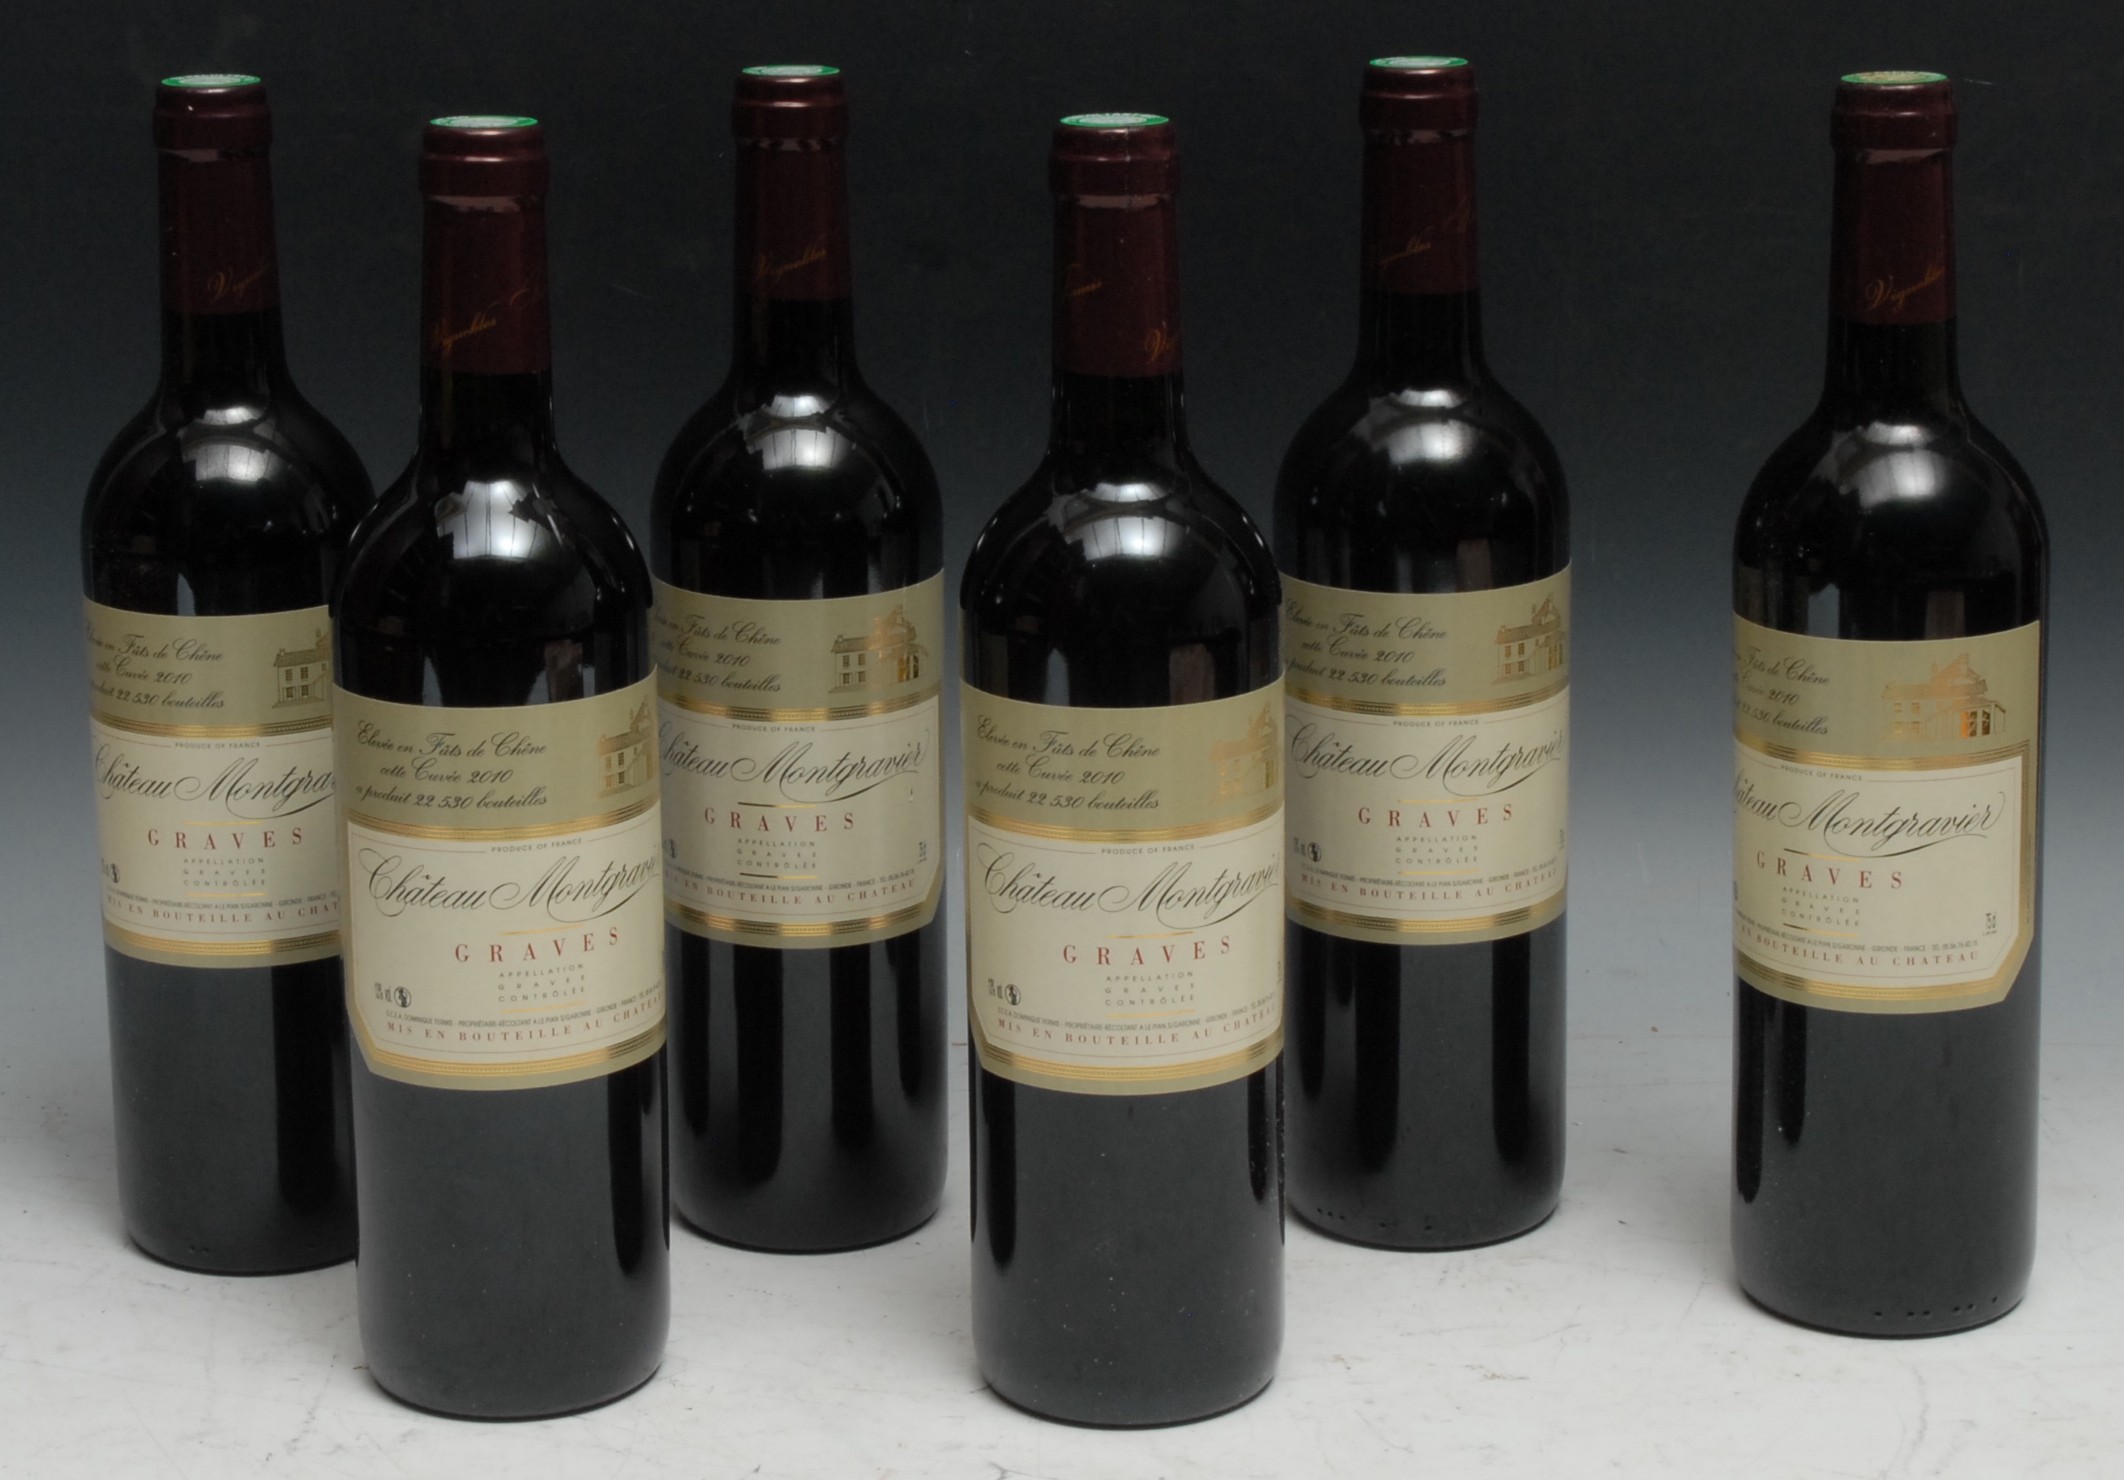 Wine - six bottles, Chateau Montravier Graves, 2010, 13.5% vol, 75cl (6)